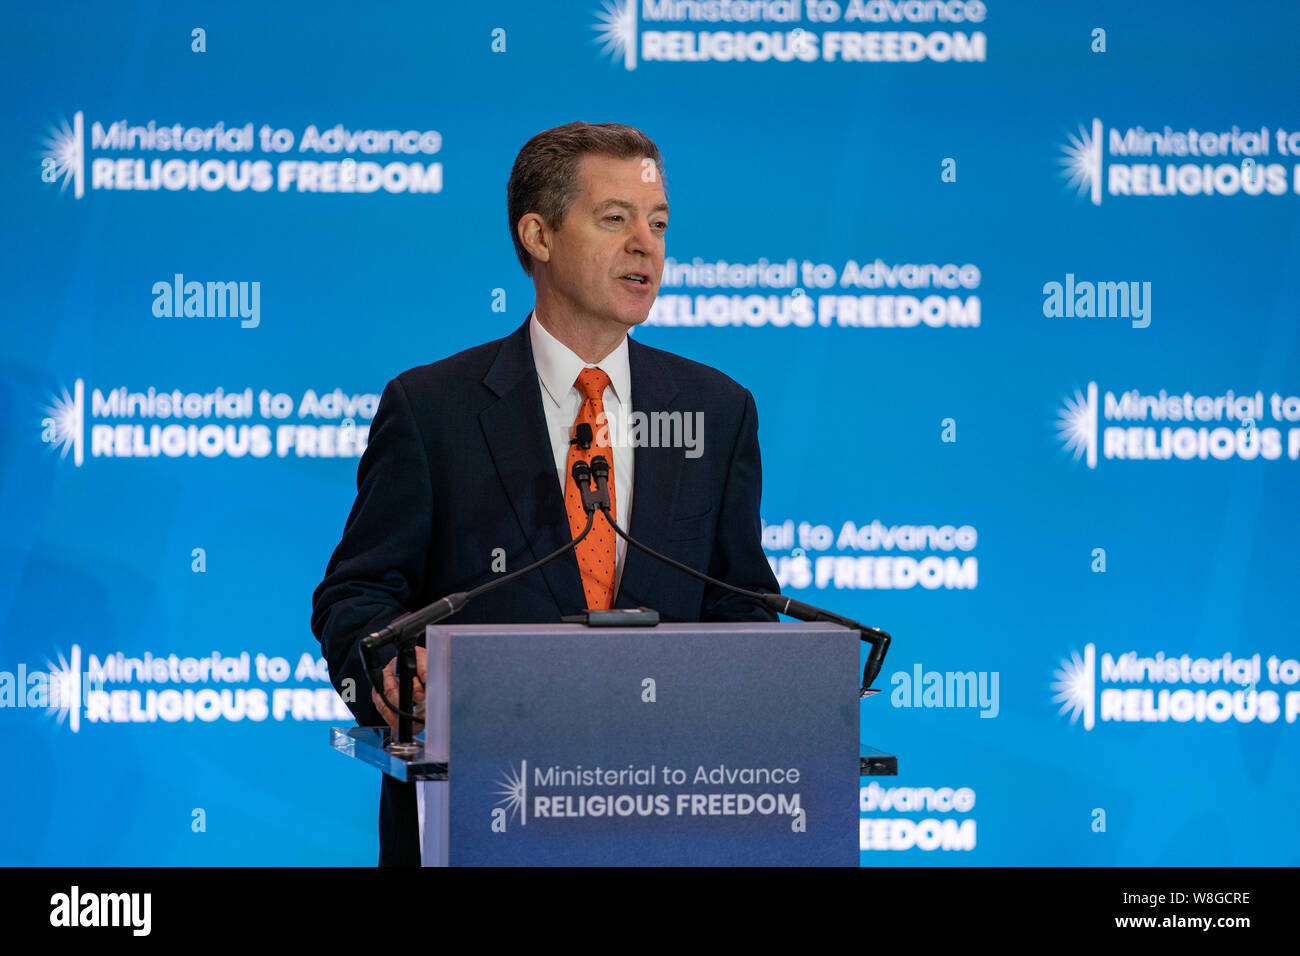 Botschafter für internationale Relgious Freedom Sam Brownback öffnet die Ministerkonferenz, die religiöse Freiheit des US-Außenministeriums Stat Stockfoto